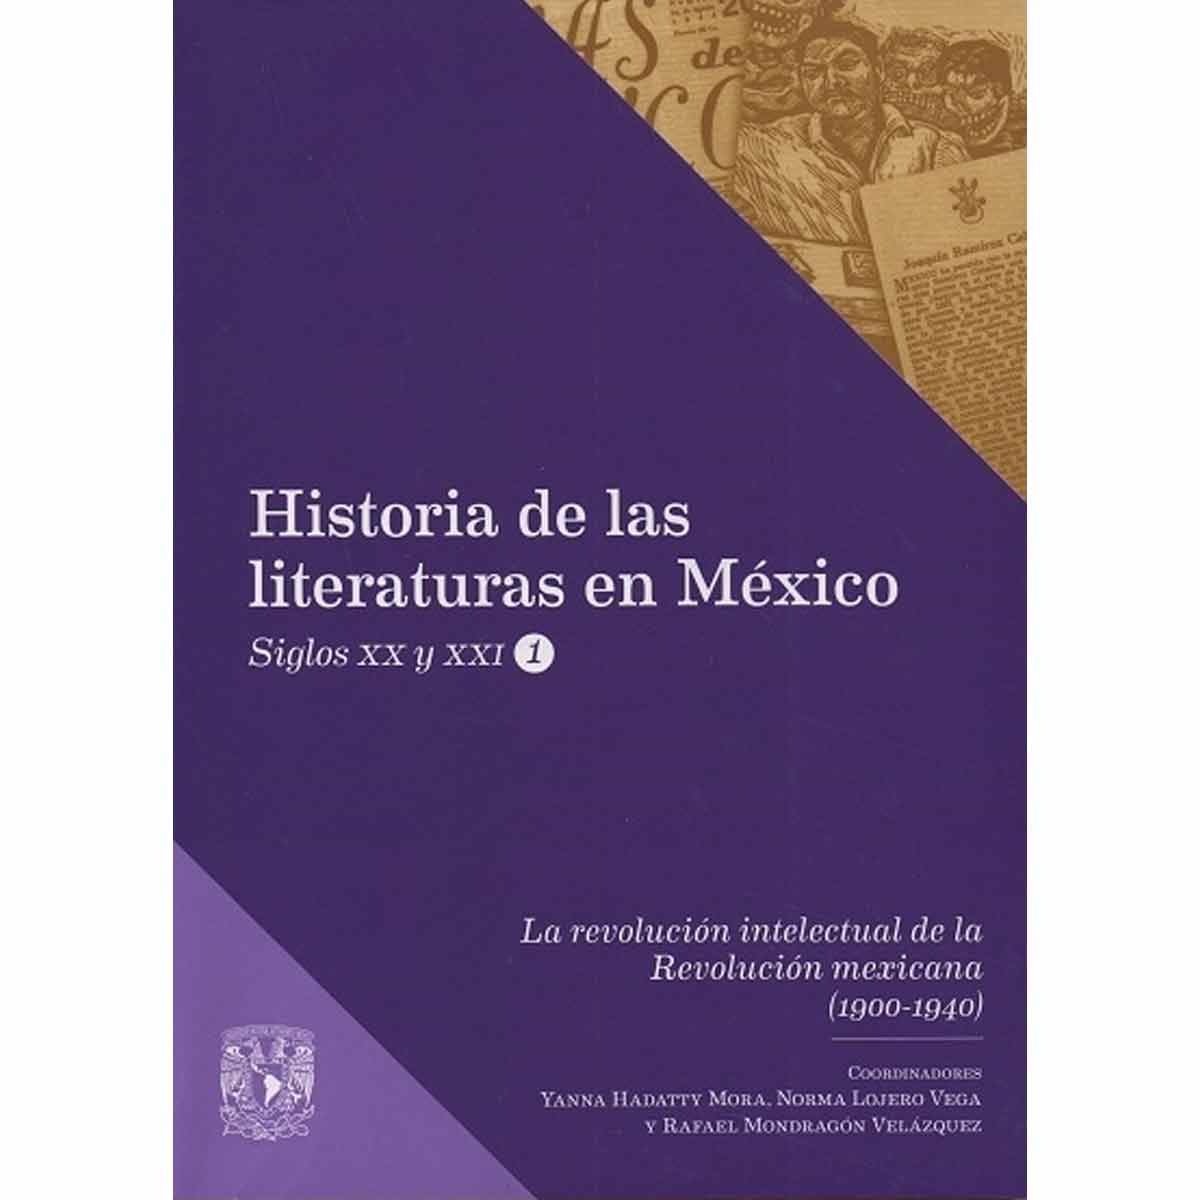 LA REVOLUCIÓN INTELECTUAL DE LA REVOLUCIÓN MEXICANA (1900-1940)